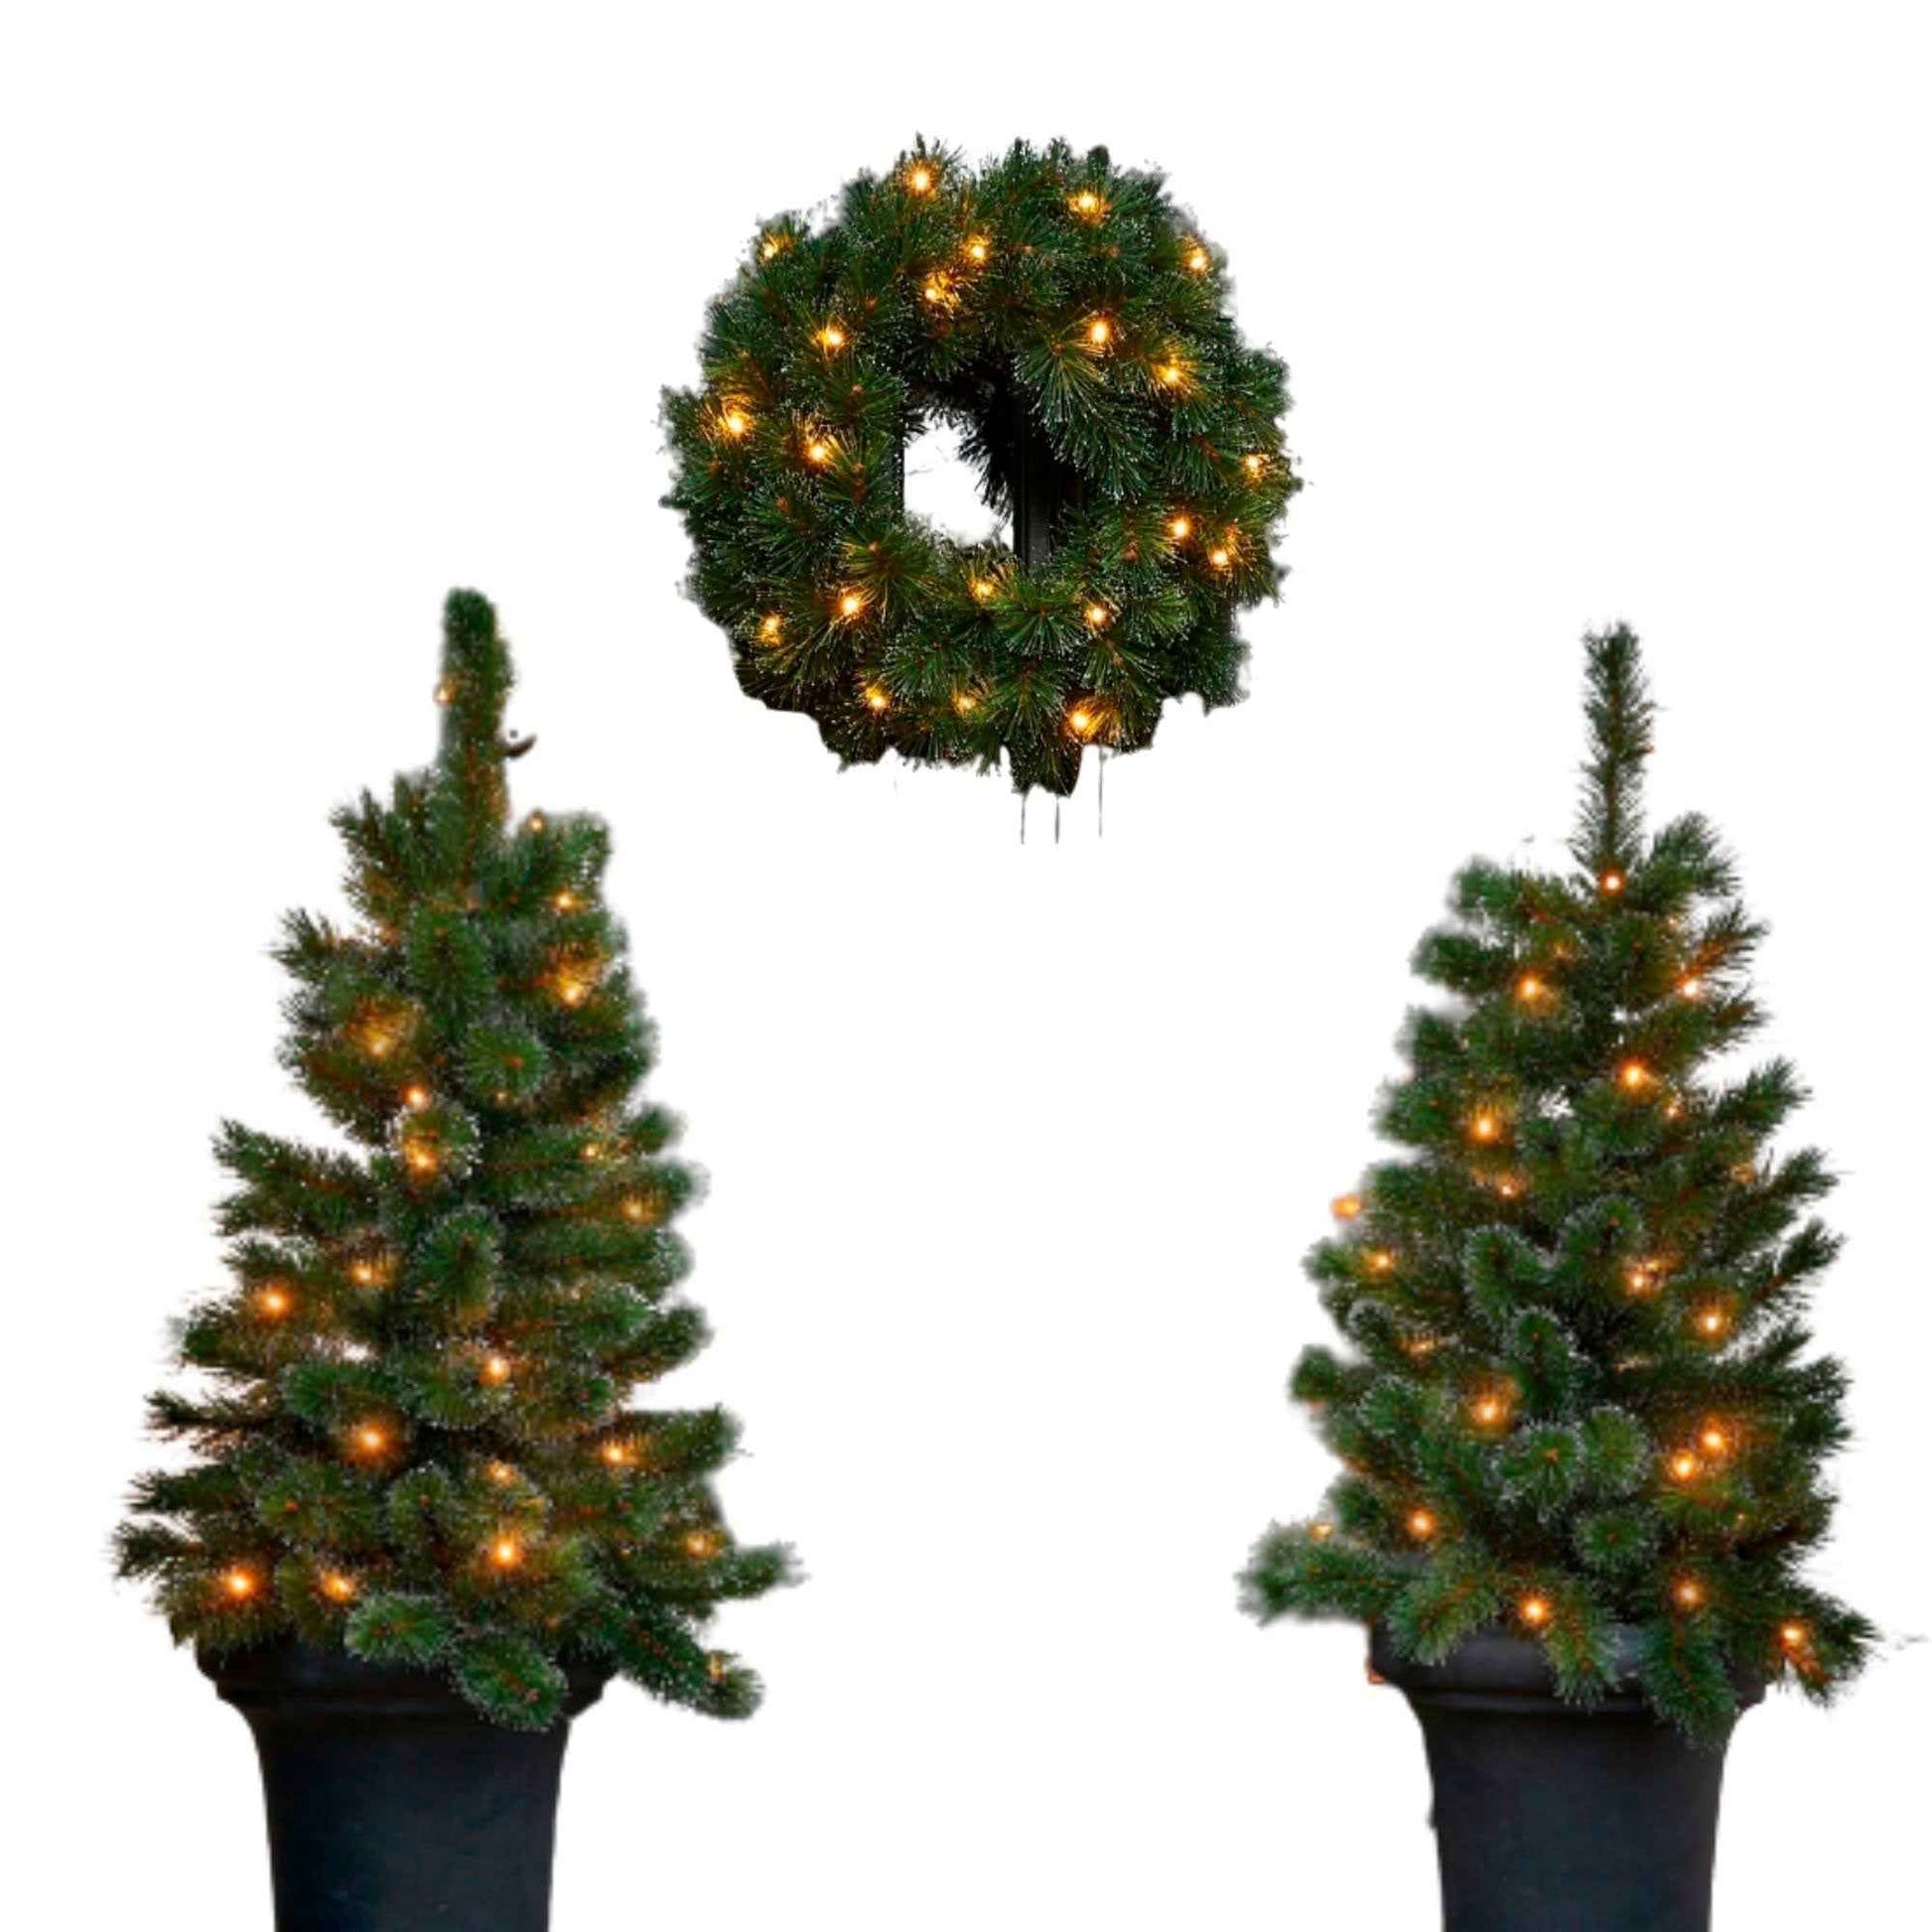 Black Box 2x Besneeuwde kunstkerstboom + 1x Kerstkrans 'Glendon' incl. ledverlichting - Kerstcollectie